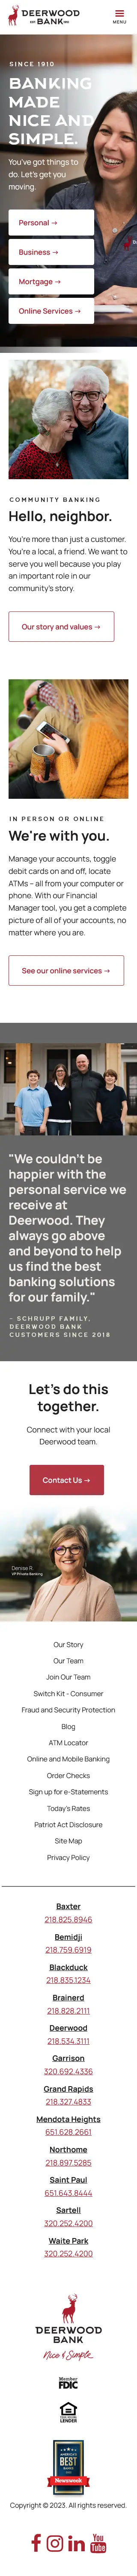 Deerwood Bank - Mobile